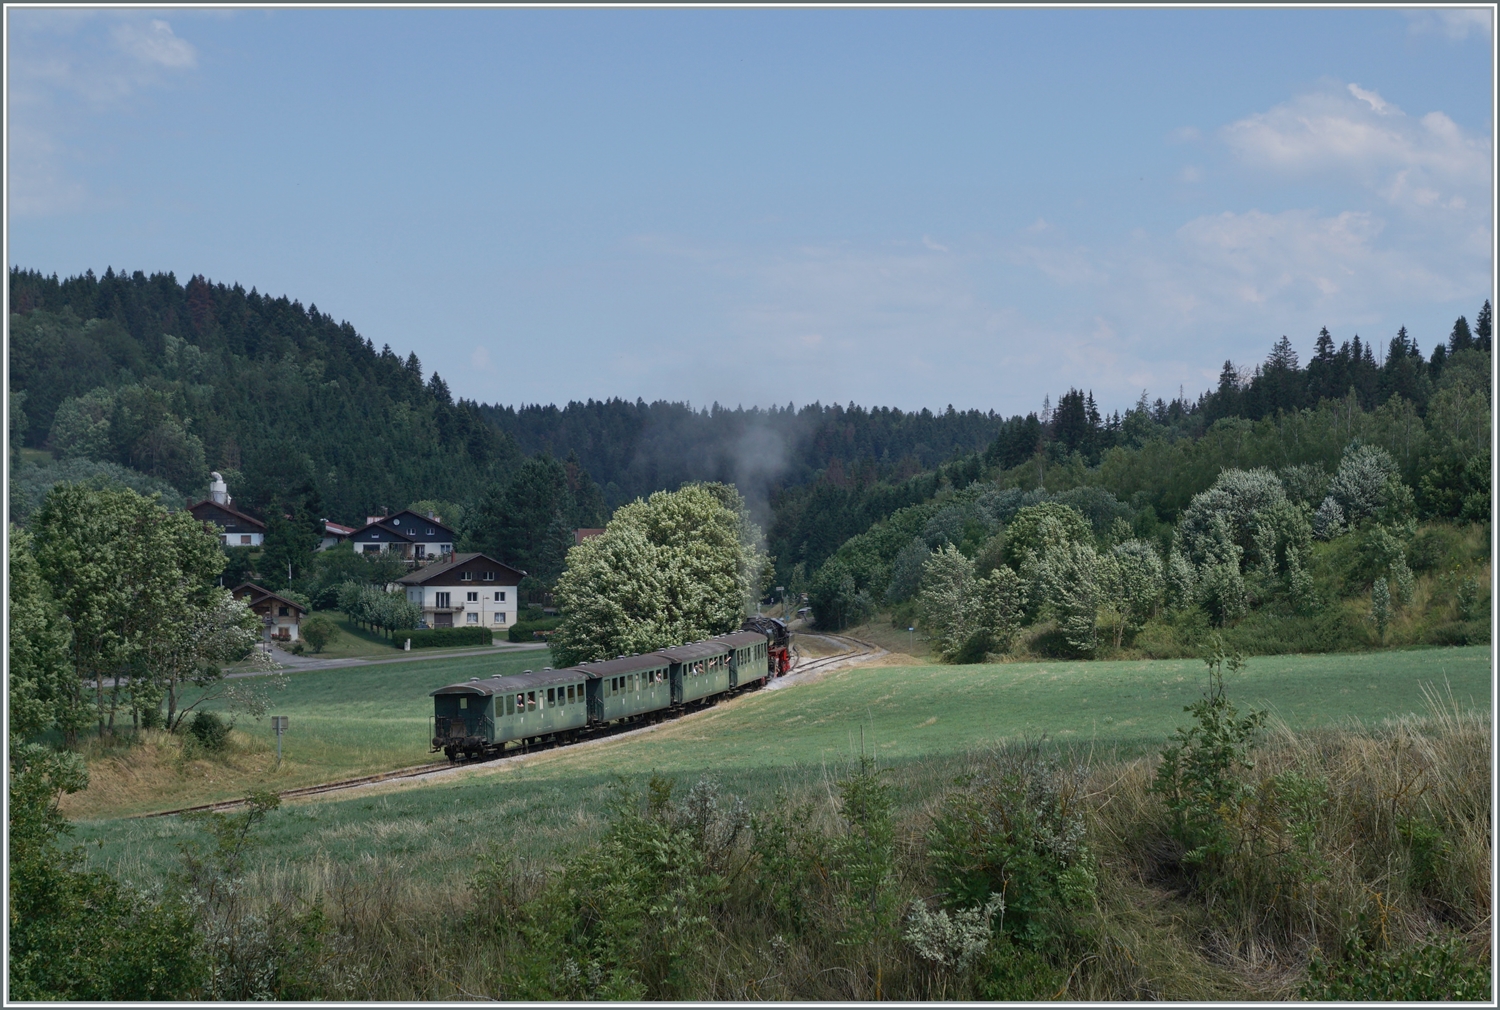 Die 52 8163-9 mit vier vierachsigen Plattform Wagen Bi 4 (ex Seetal/EBT?) auf der Fahrt nach Fontaine Ronde erreicht den von der Coni'Fer angelegten Kreuzungsbahnhof in Le Touillon.
Kilometerangaben: J-E/JS/SBB km 58 (ab Lausanne) - PLM/SNCF/Coni'Fer Km 467 (ab Paris).

15. Juli 2023